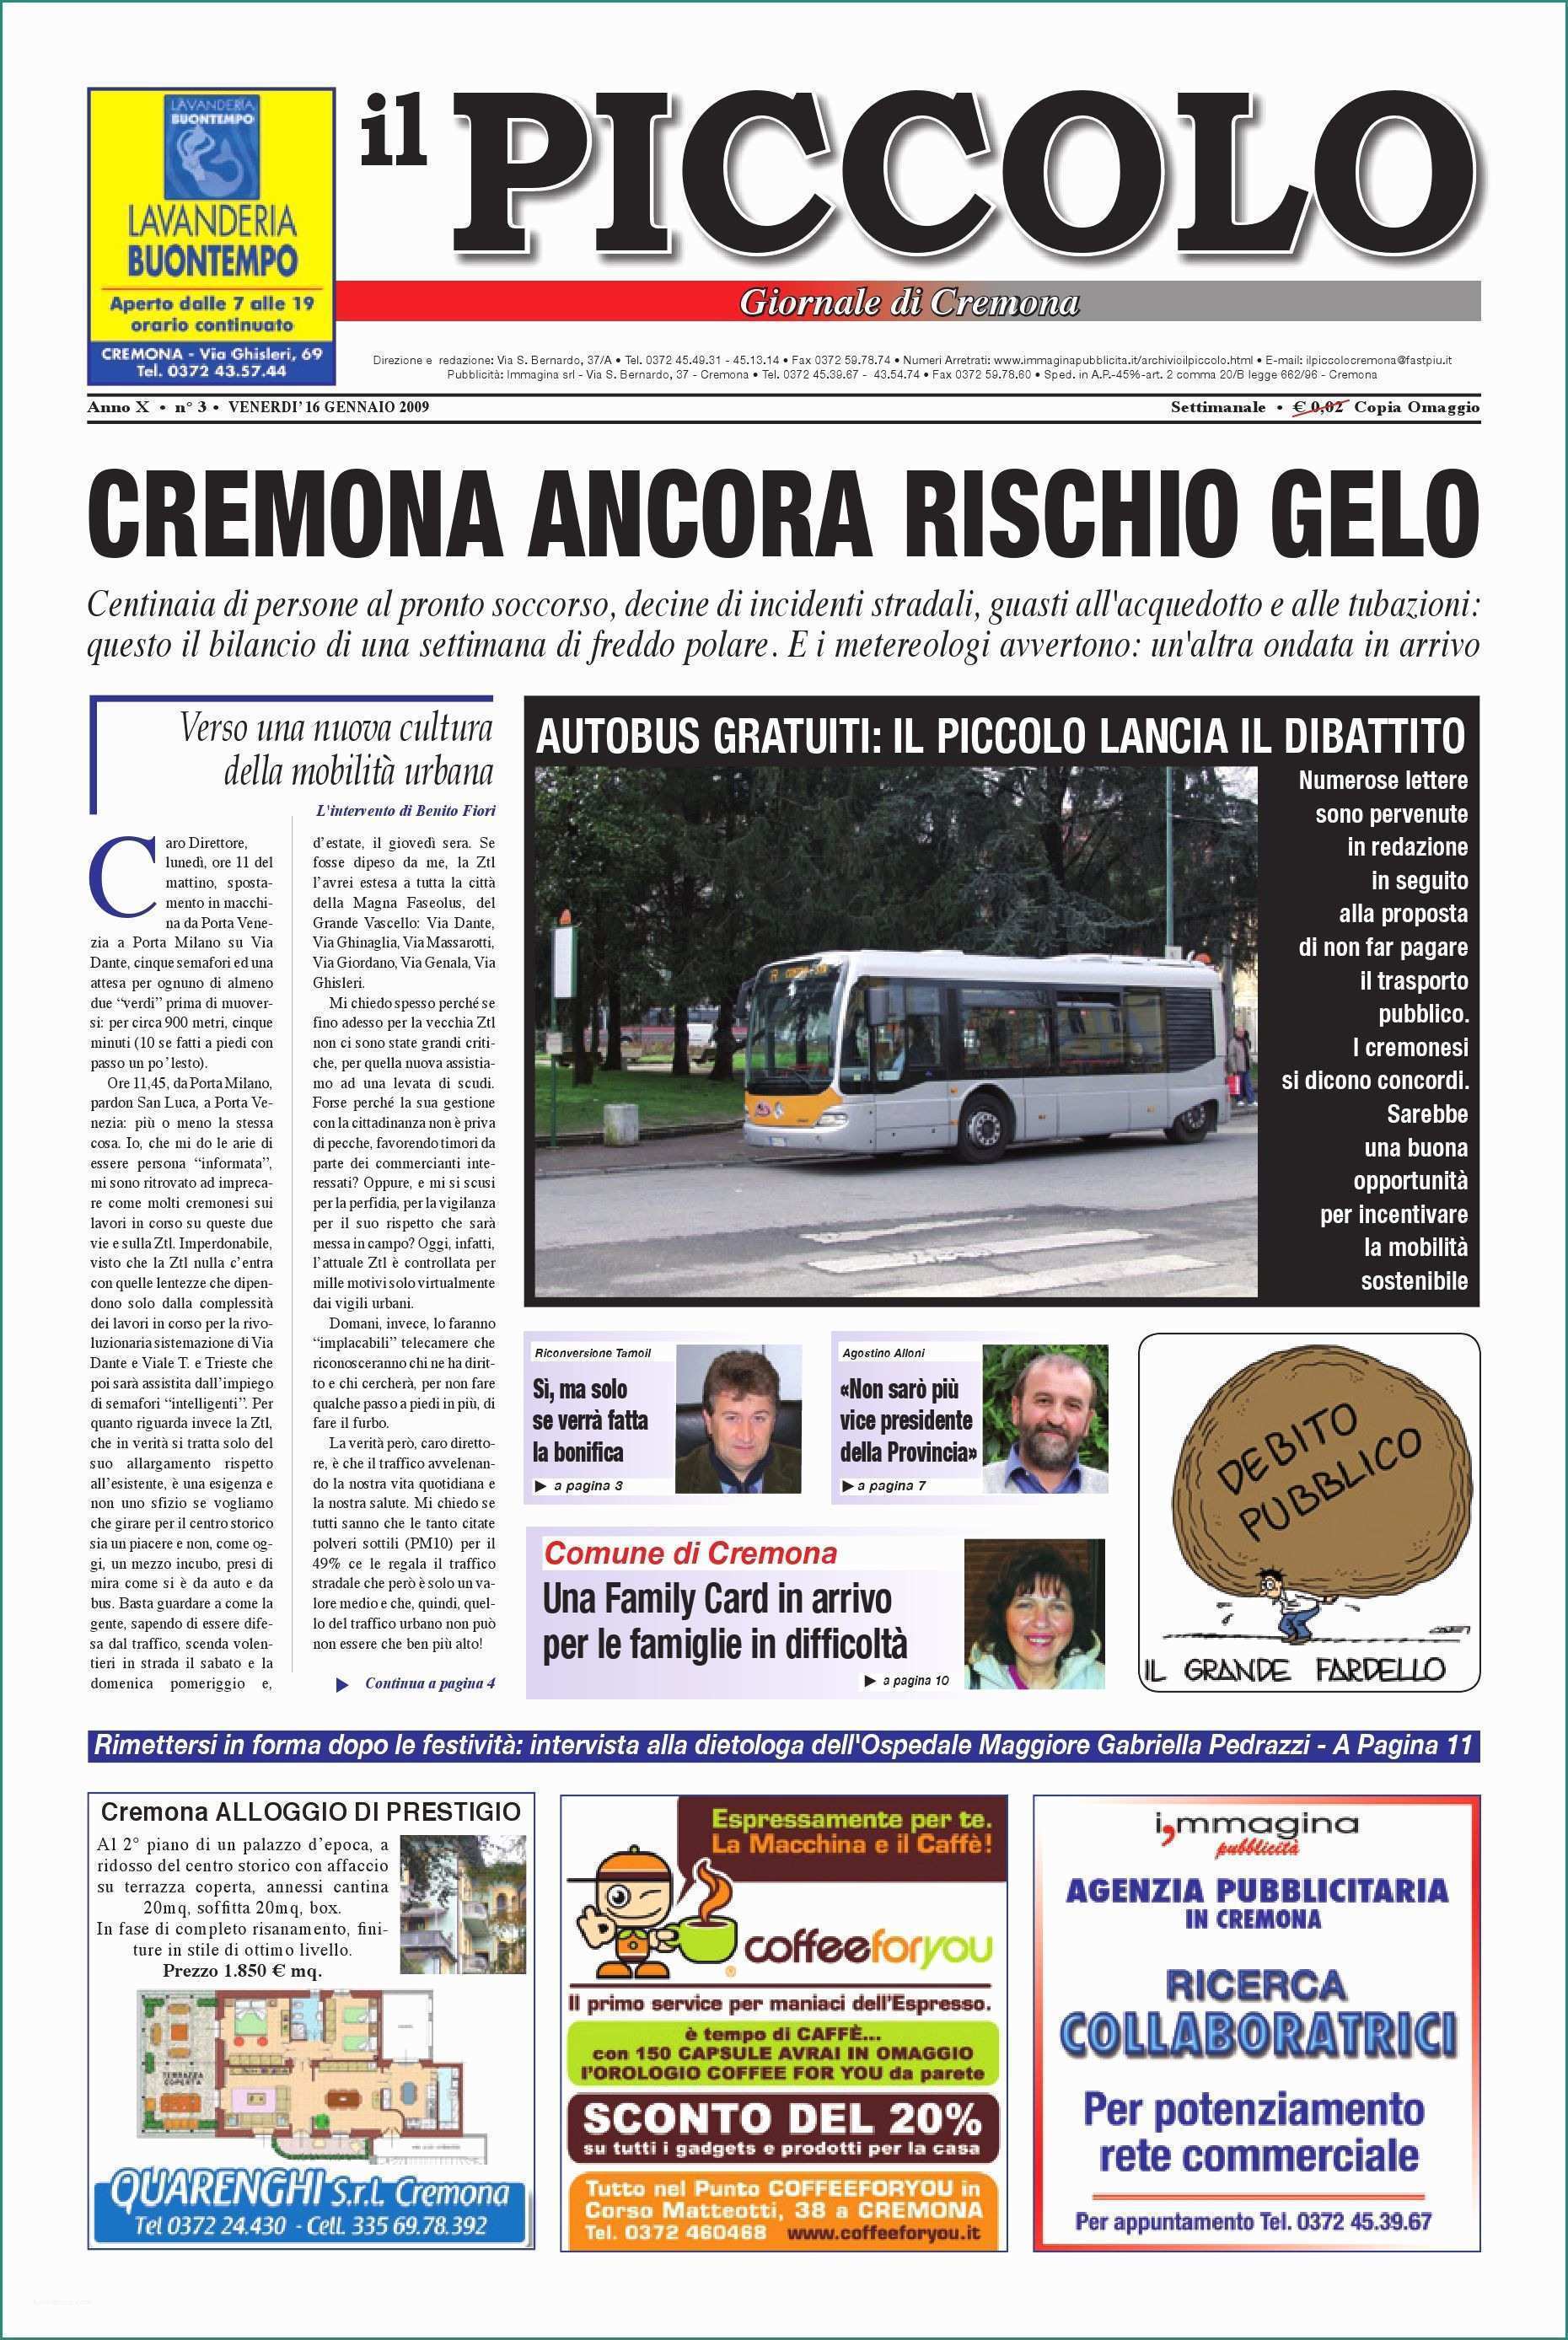 Blocca Tapparelle Leroy Merlin E Il Piccolo Giornale by Promedia Promedia issuu